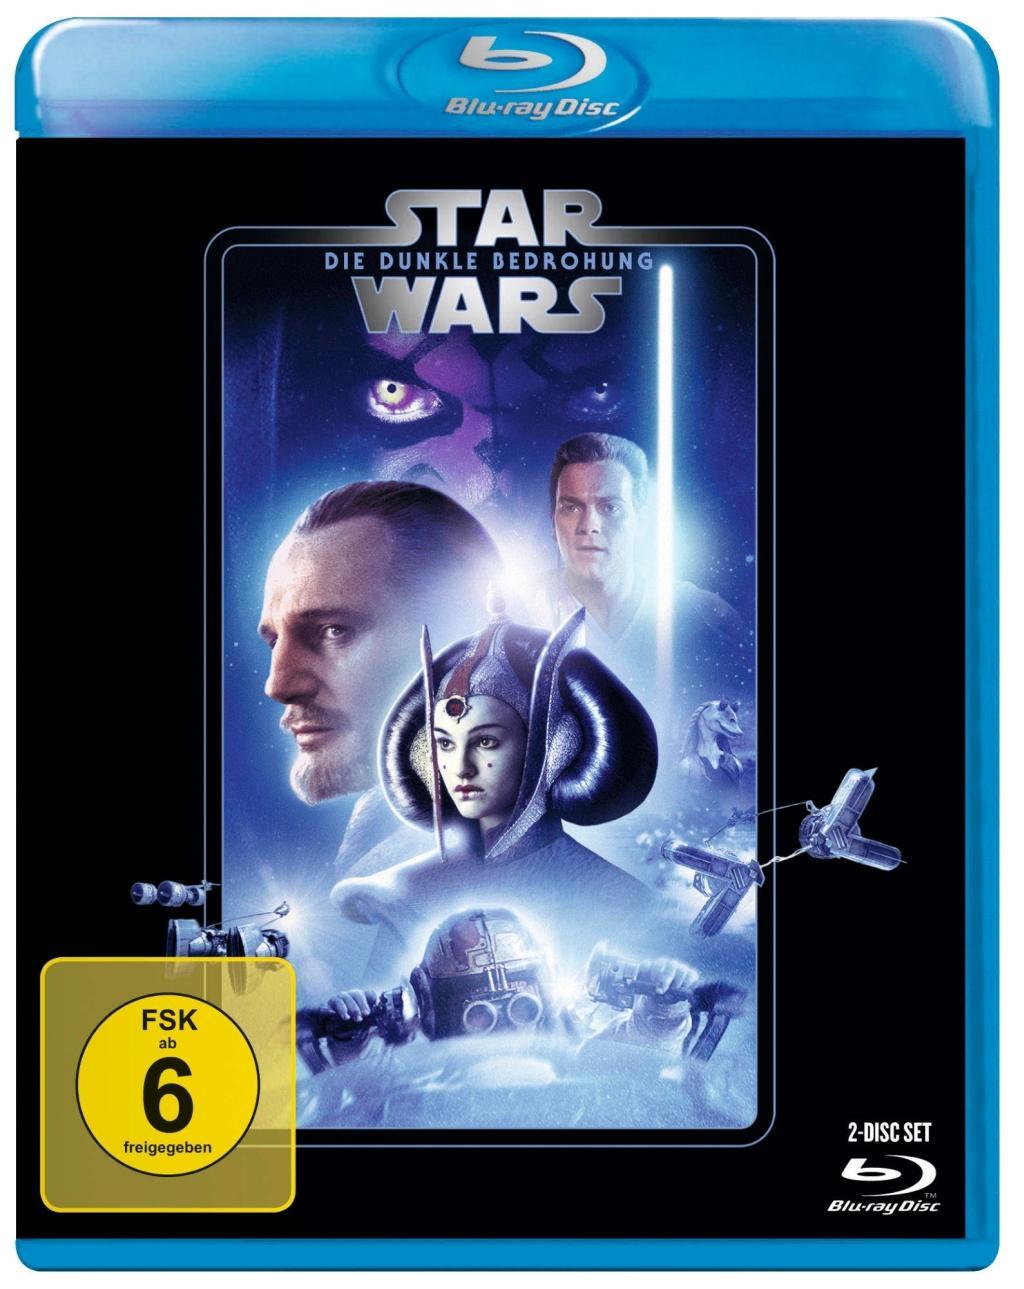 Videoclip Star Wars Episode 1, Die dunkle Bedrohung, 1 Blu-ray George Lucas